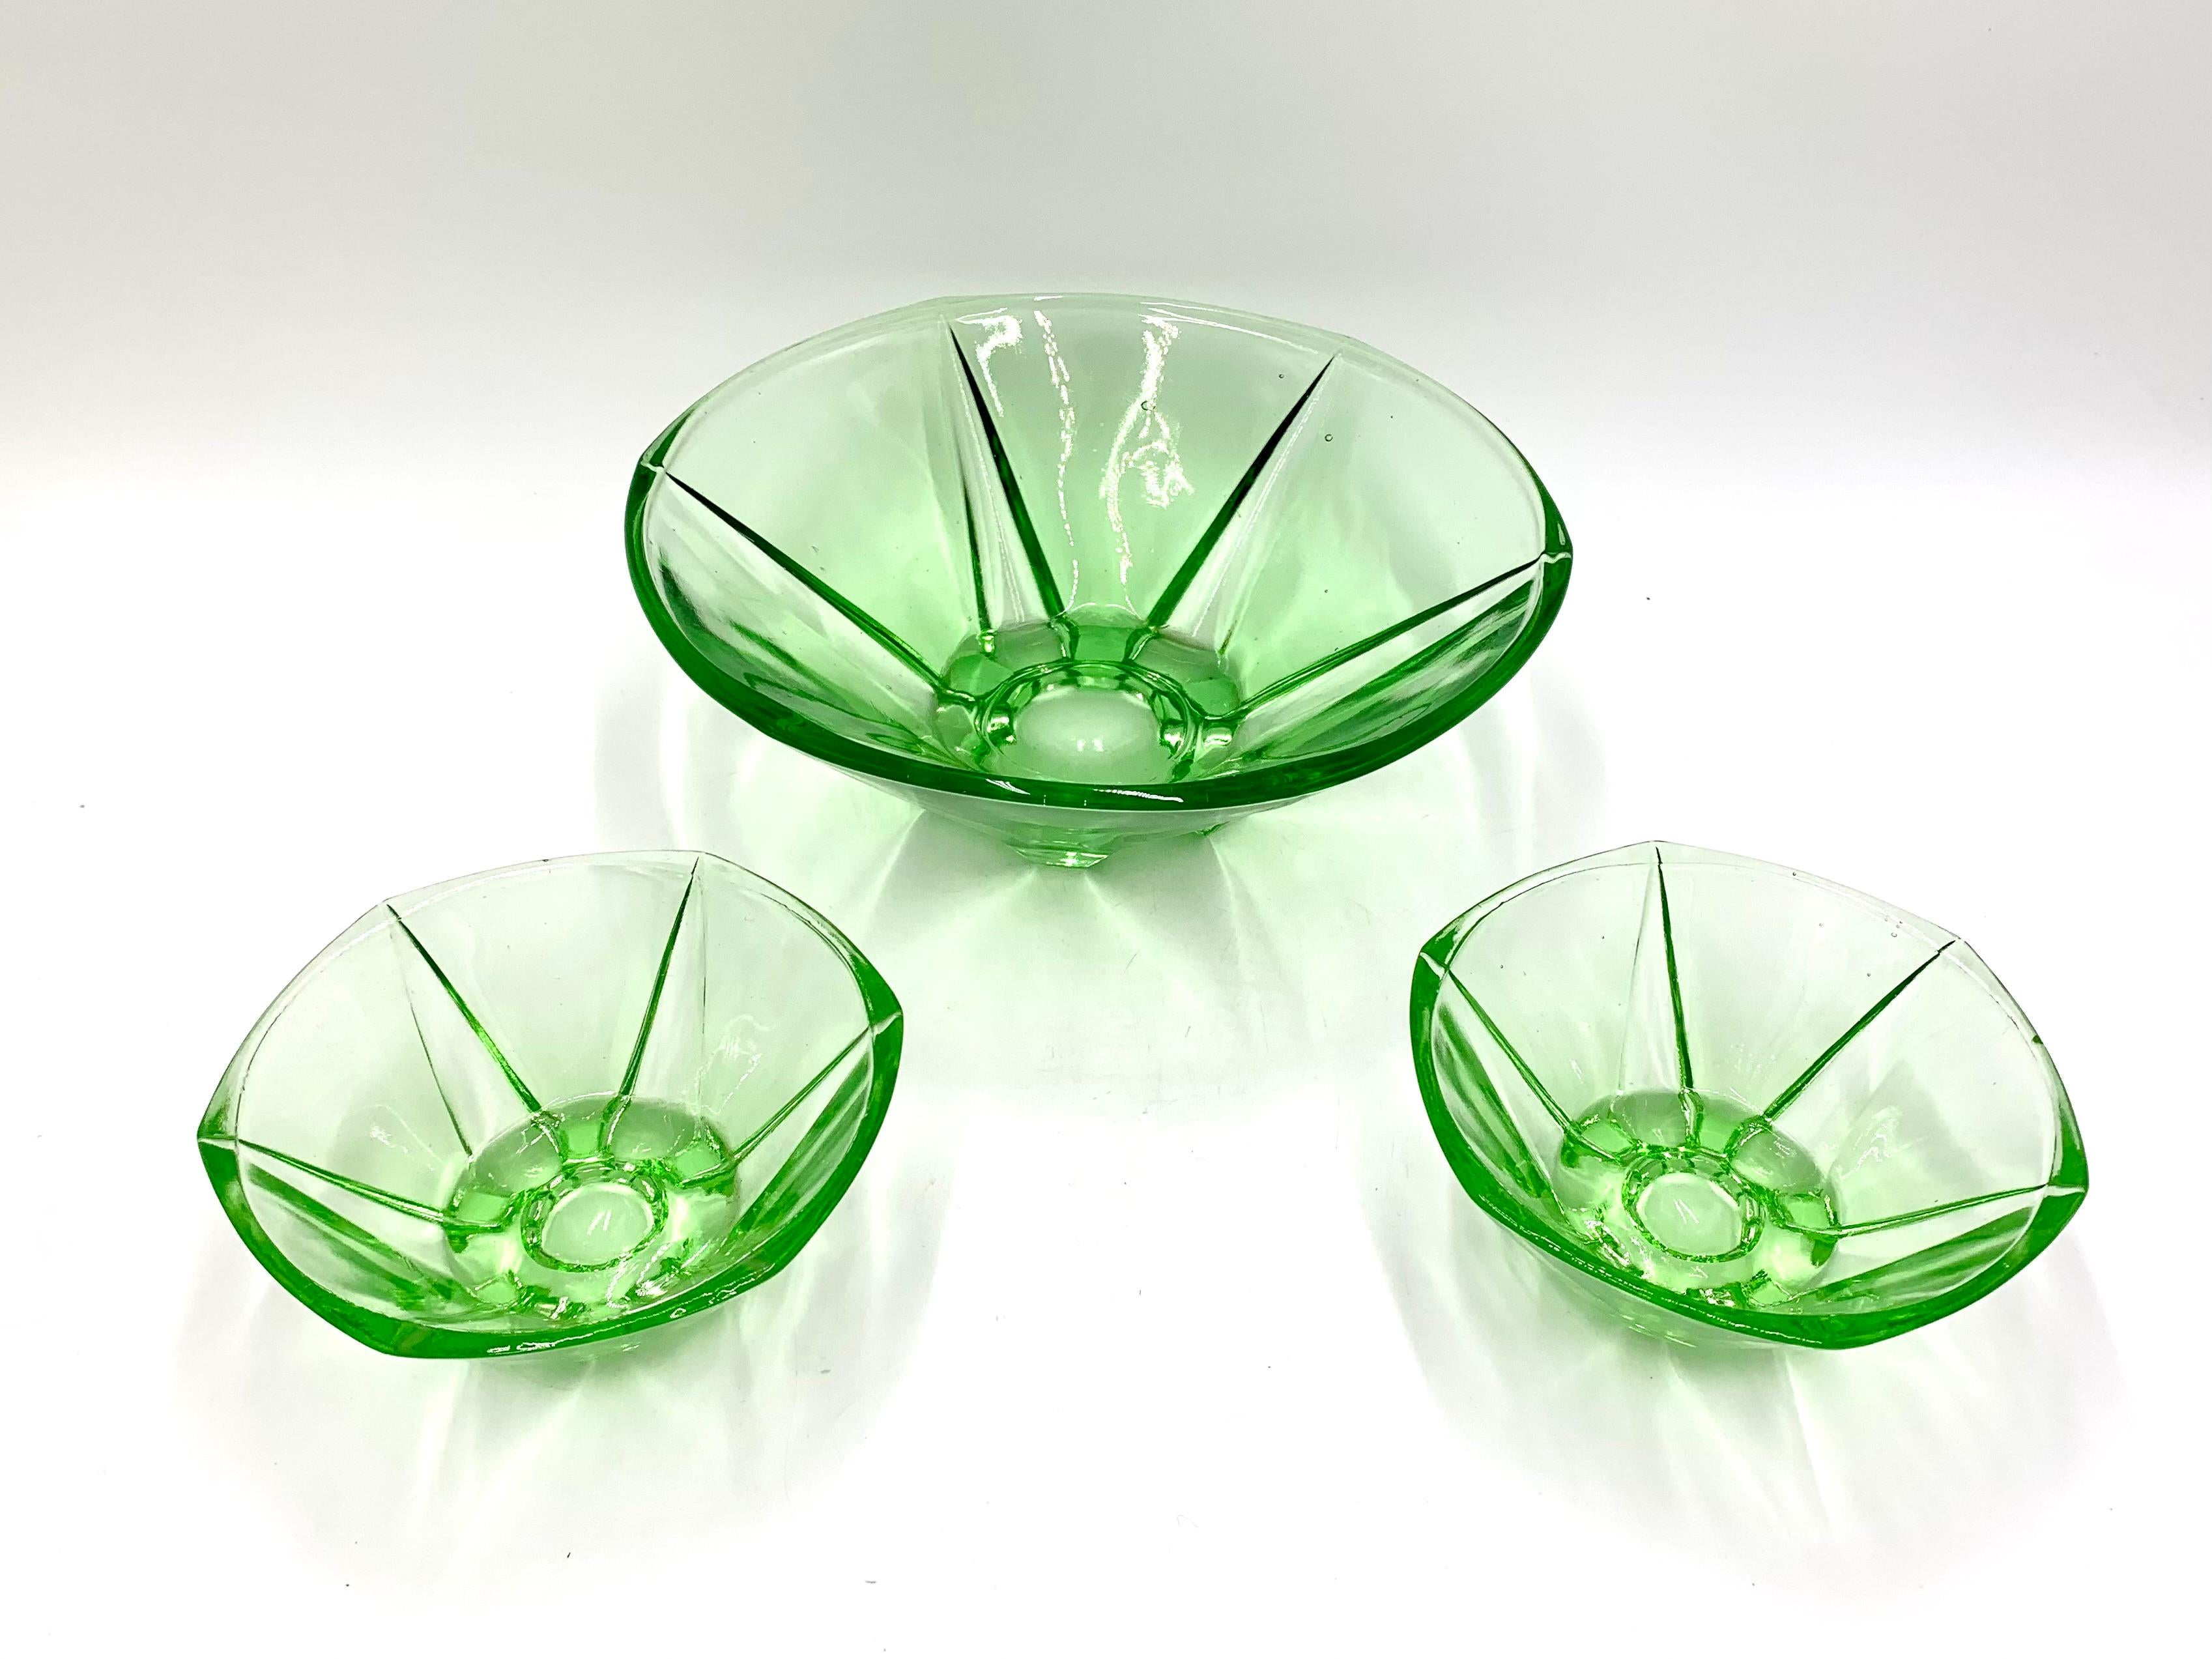 Ensemble de trois bols en verre vert vintage (un grand et deux petits)

Fabriqué en Pologne dans les années 1960

Très bon état

Mesures : Plus grand : Hauteur 8cm, diamètre 22cm

Plus petit : Hauteur 6cm, diamètre 12cm.